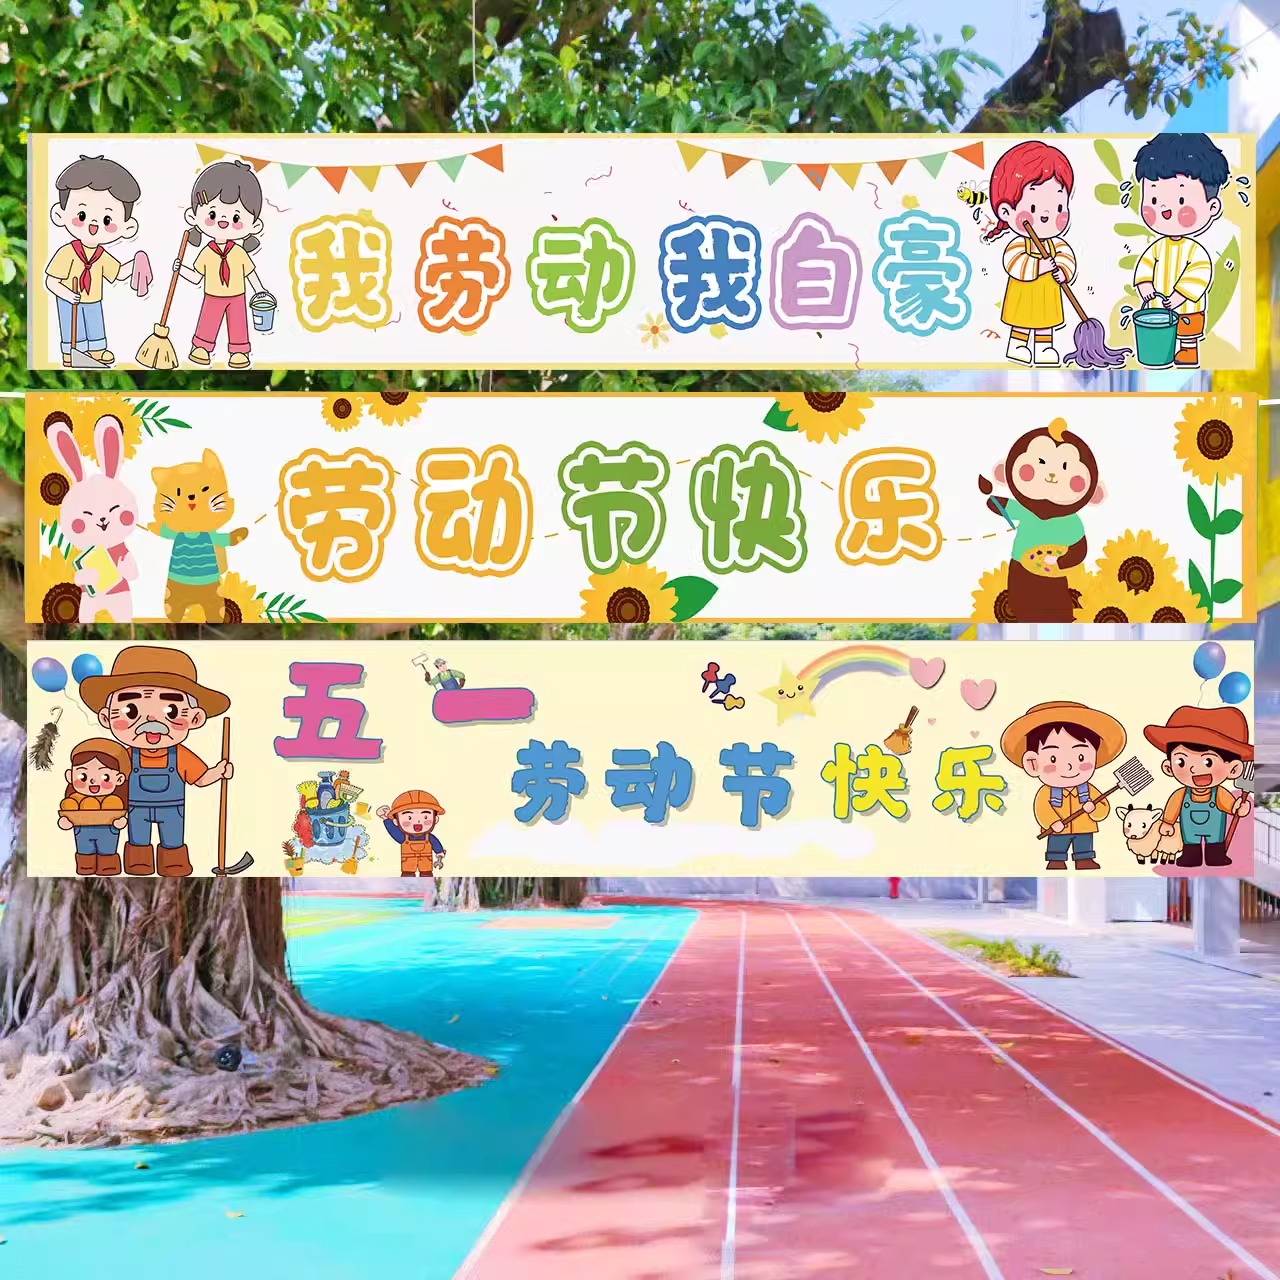 五一劳动节背景墙布置装饰幼儿园环创场景氛围条幅挂件海报气球